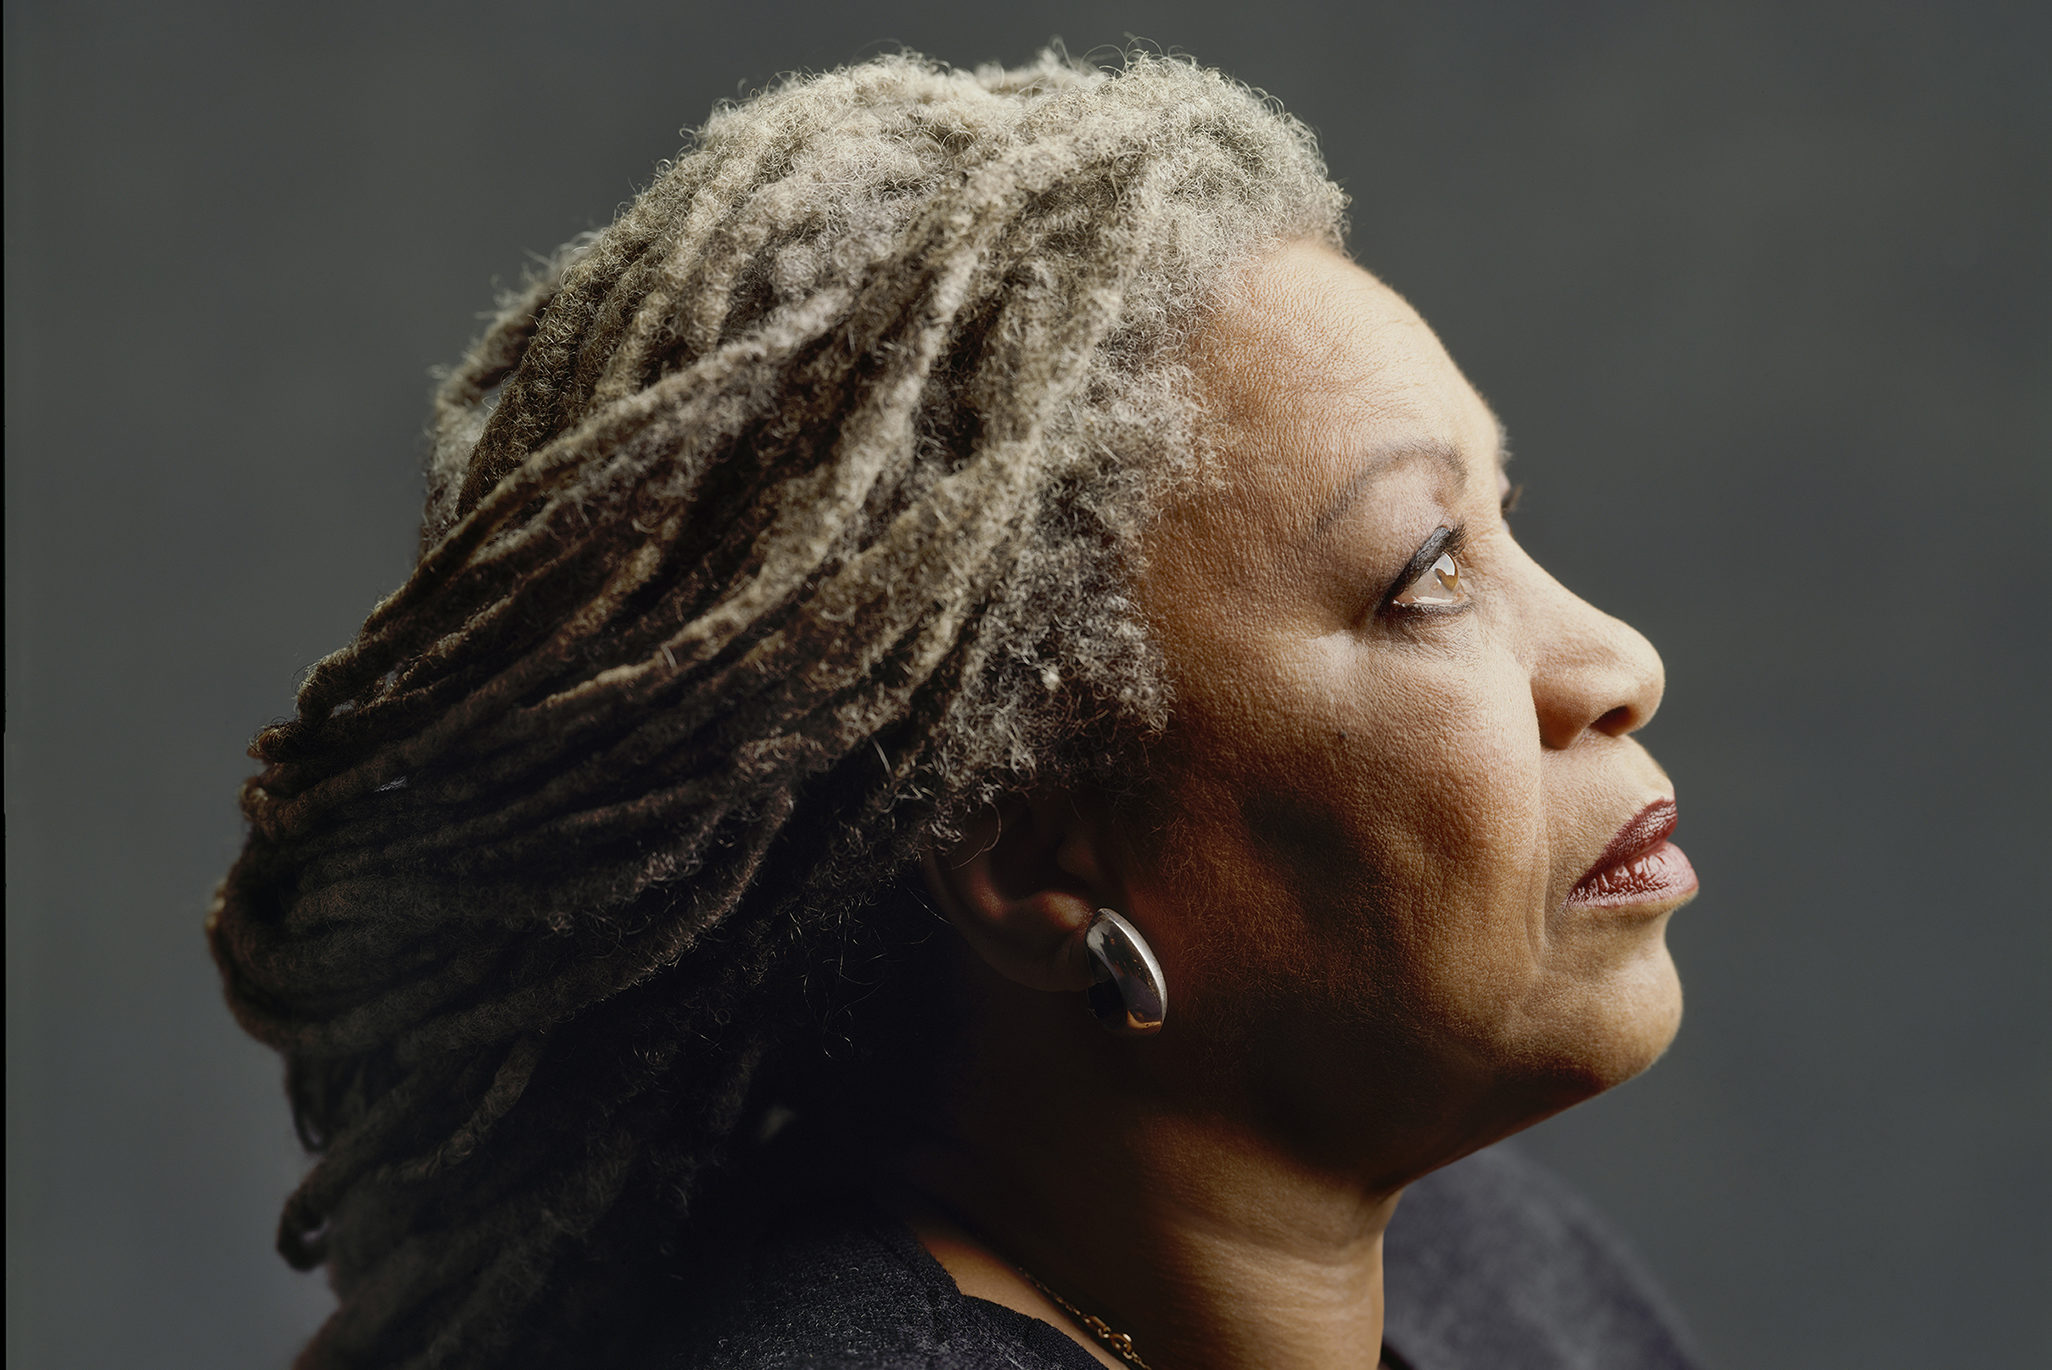 Murió Toni Morrison, la escritora afroamericana que puso en la palestra el pasado opresor de EE. UU.